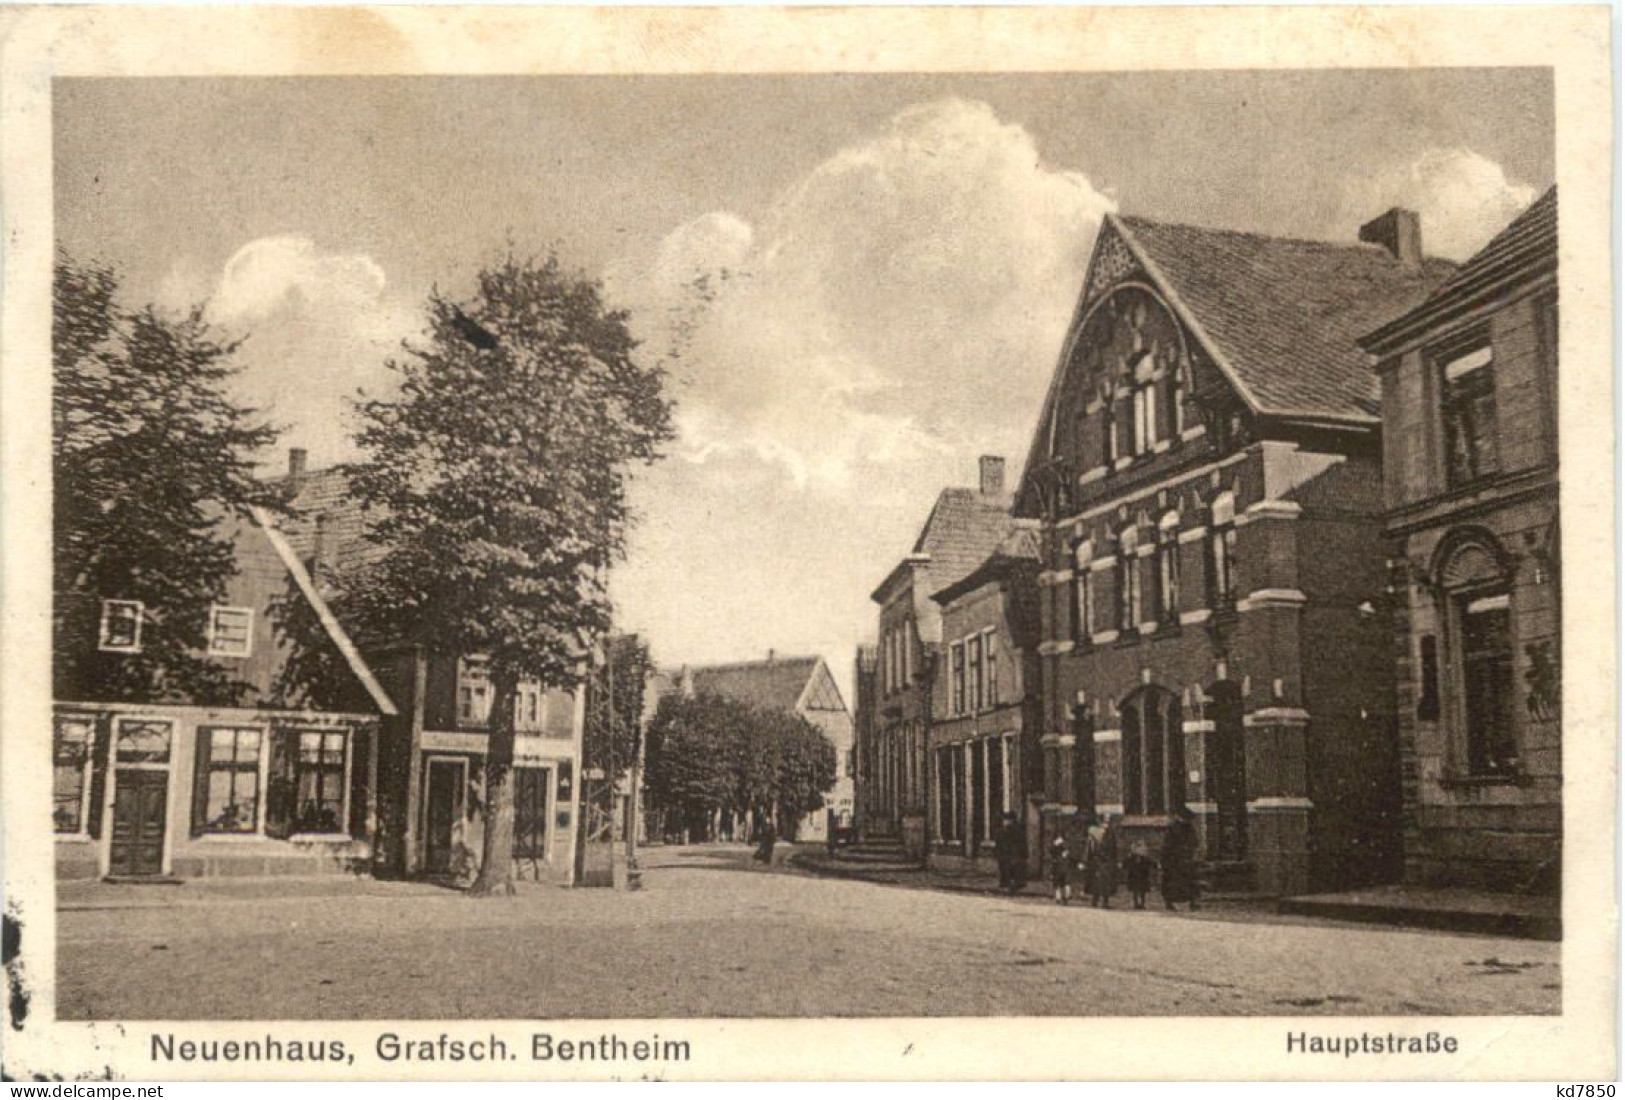 Neuenhaus, Grafsch. Bentheim - Hauptstrasse - Bad Bentheim